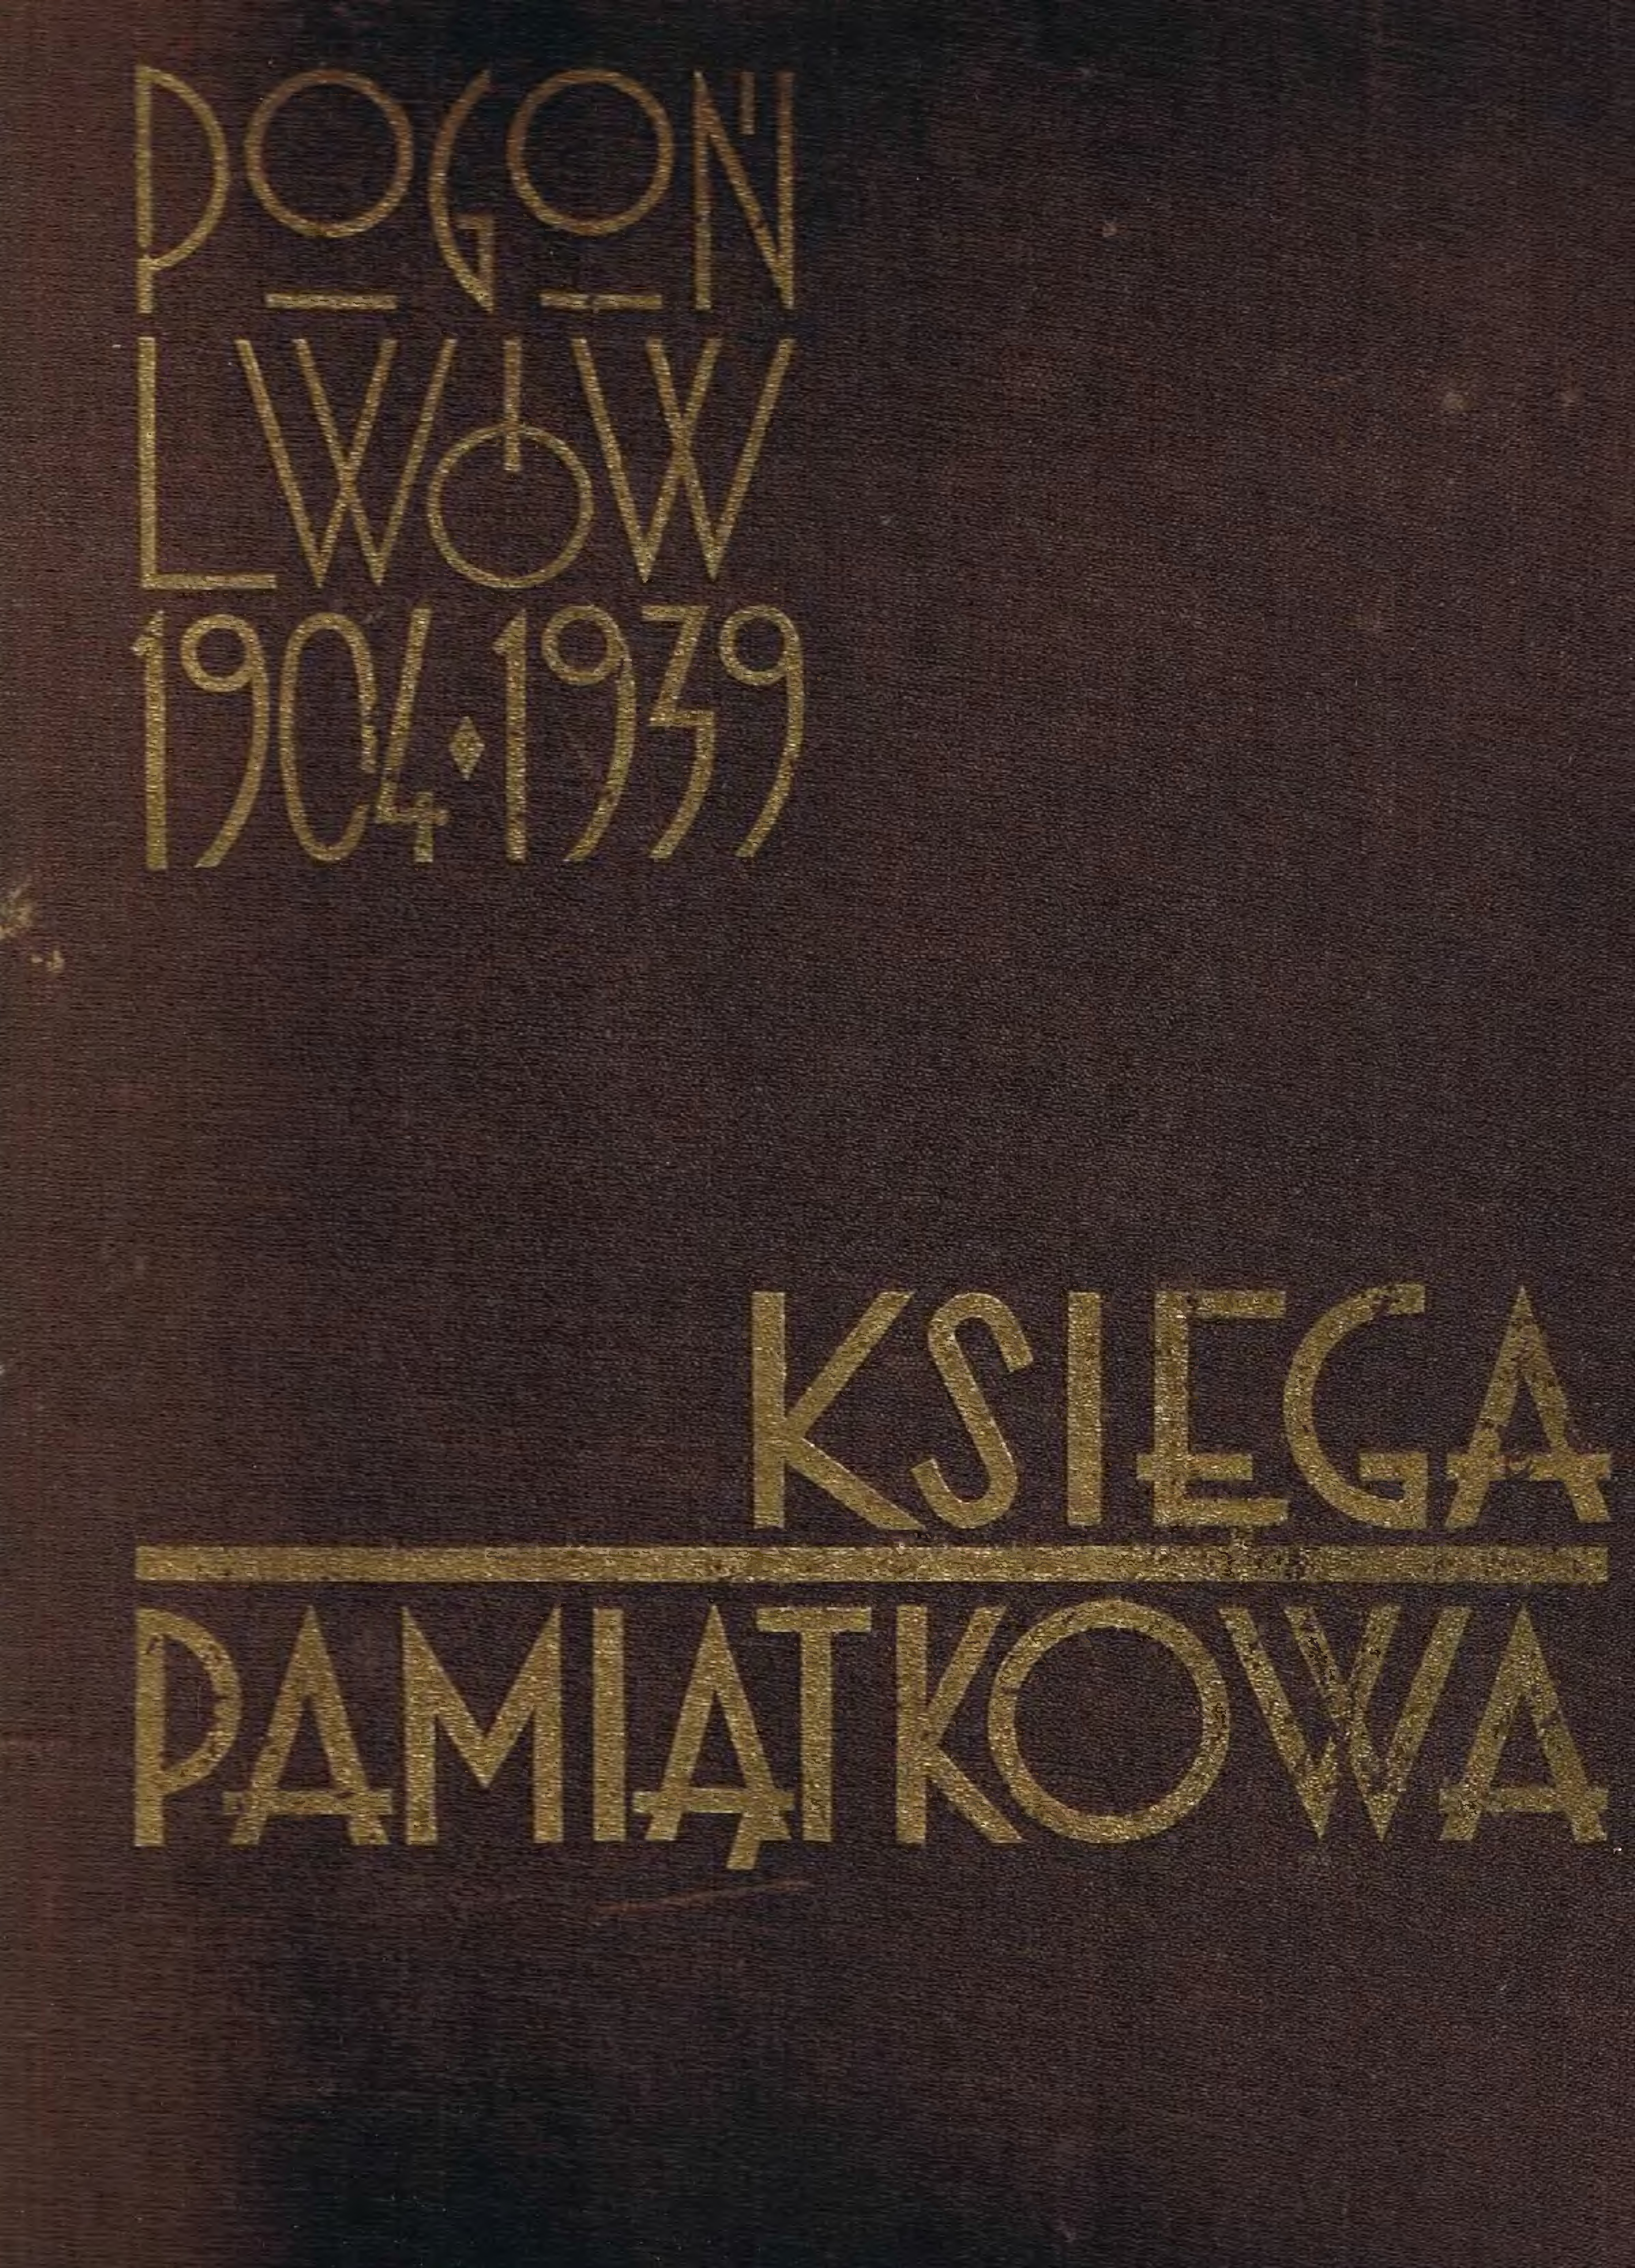 Pogoń Lwów 1904-1939 księga pamiątkowa